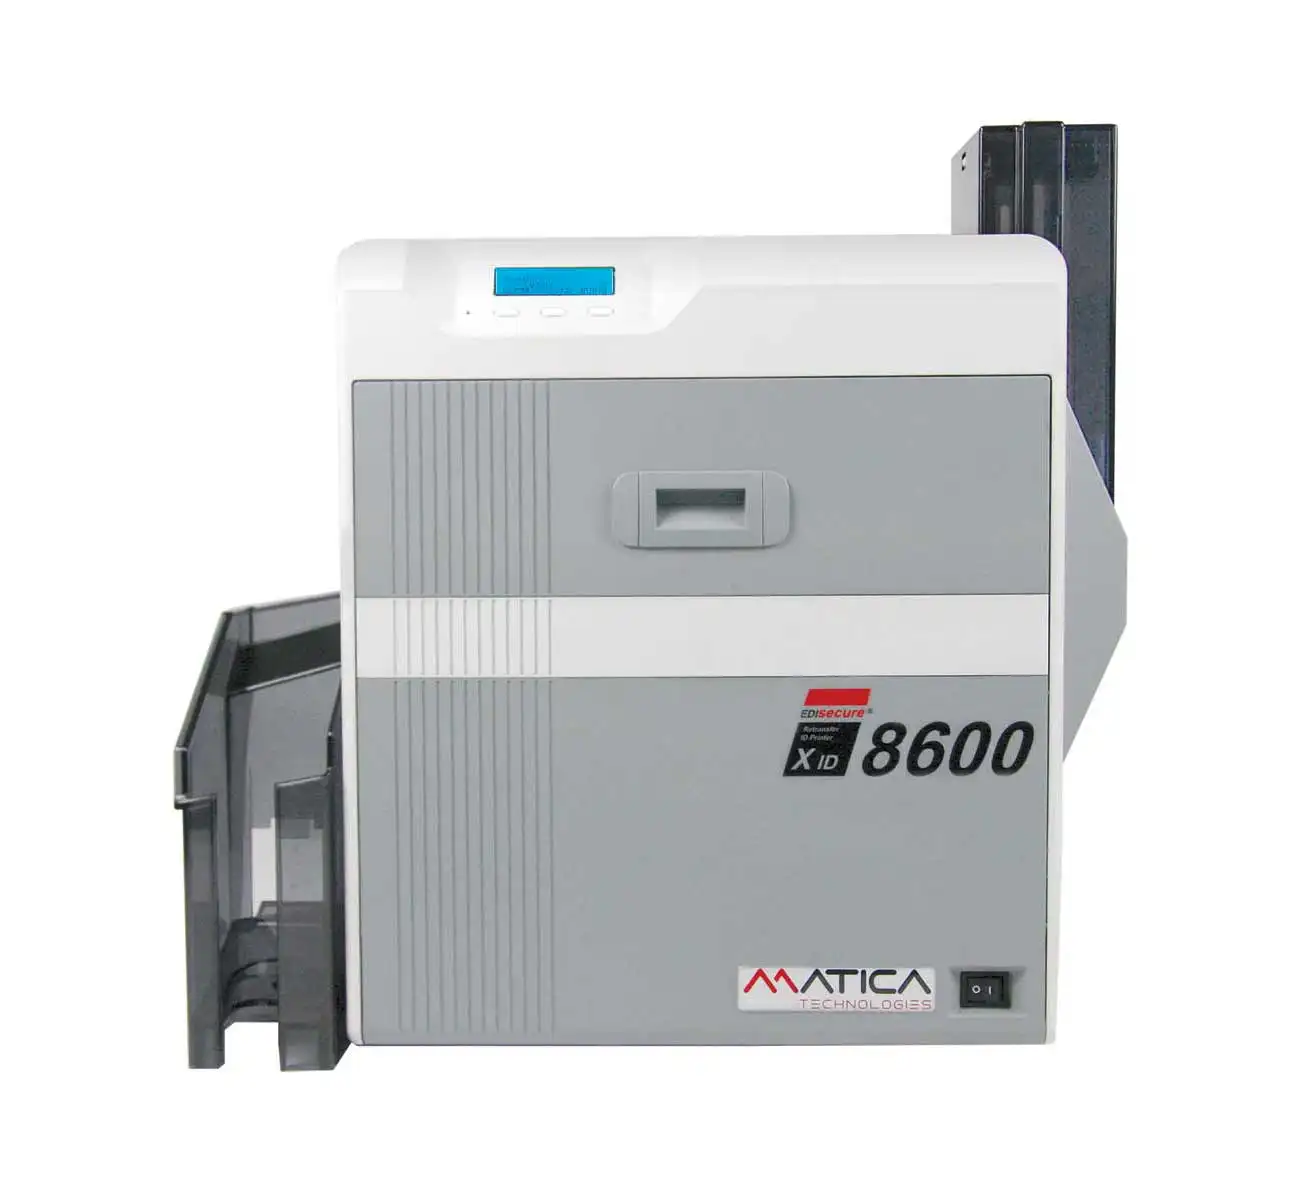 Impressora de cartão de acesso padrão diverso xid8600, impressora matica xid8600 de retransferência